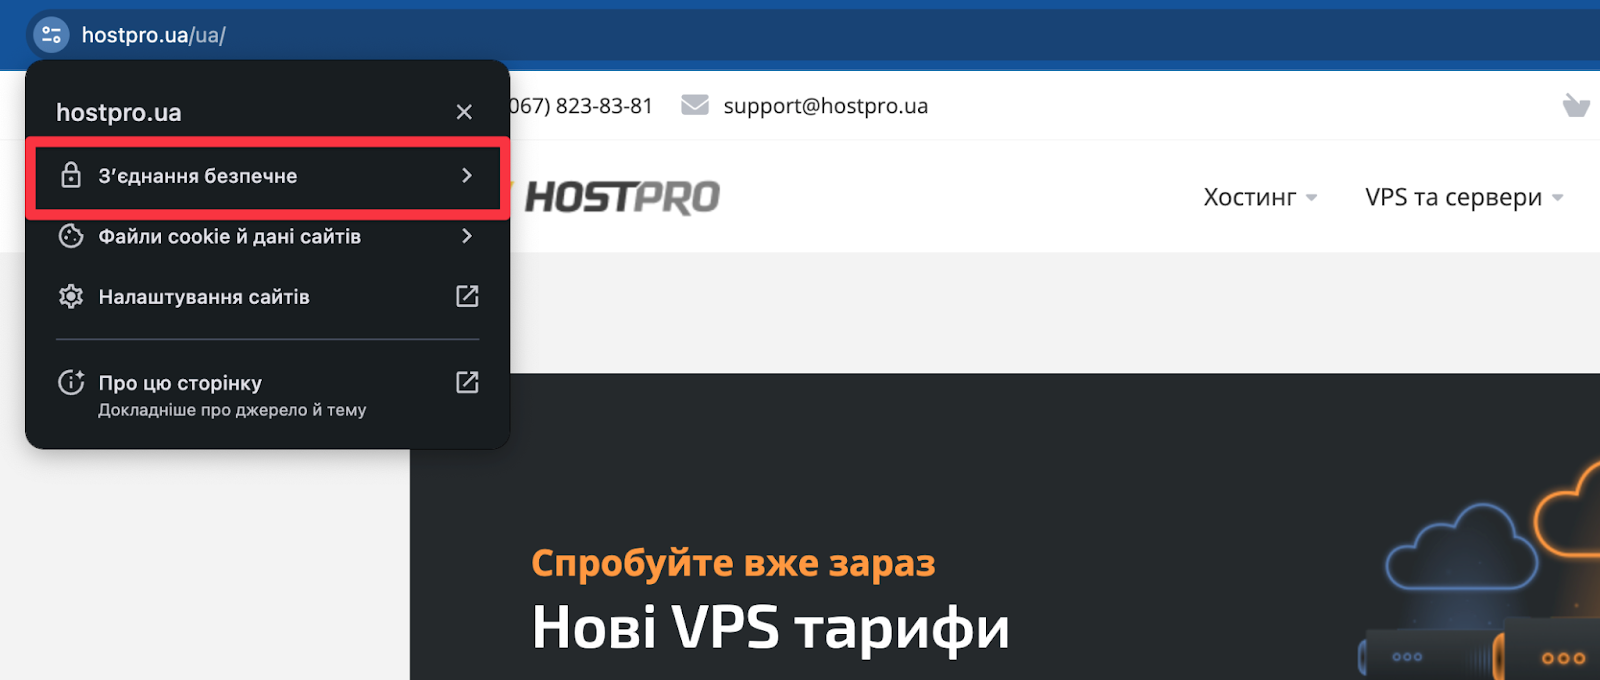 Проверка SSL-сертификата на сайте | Блог HostPro